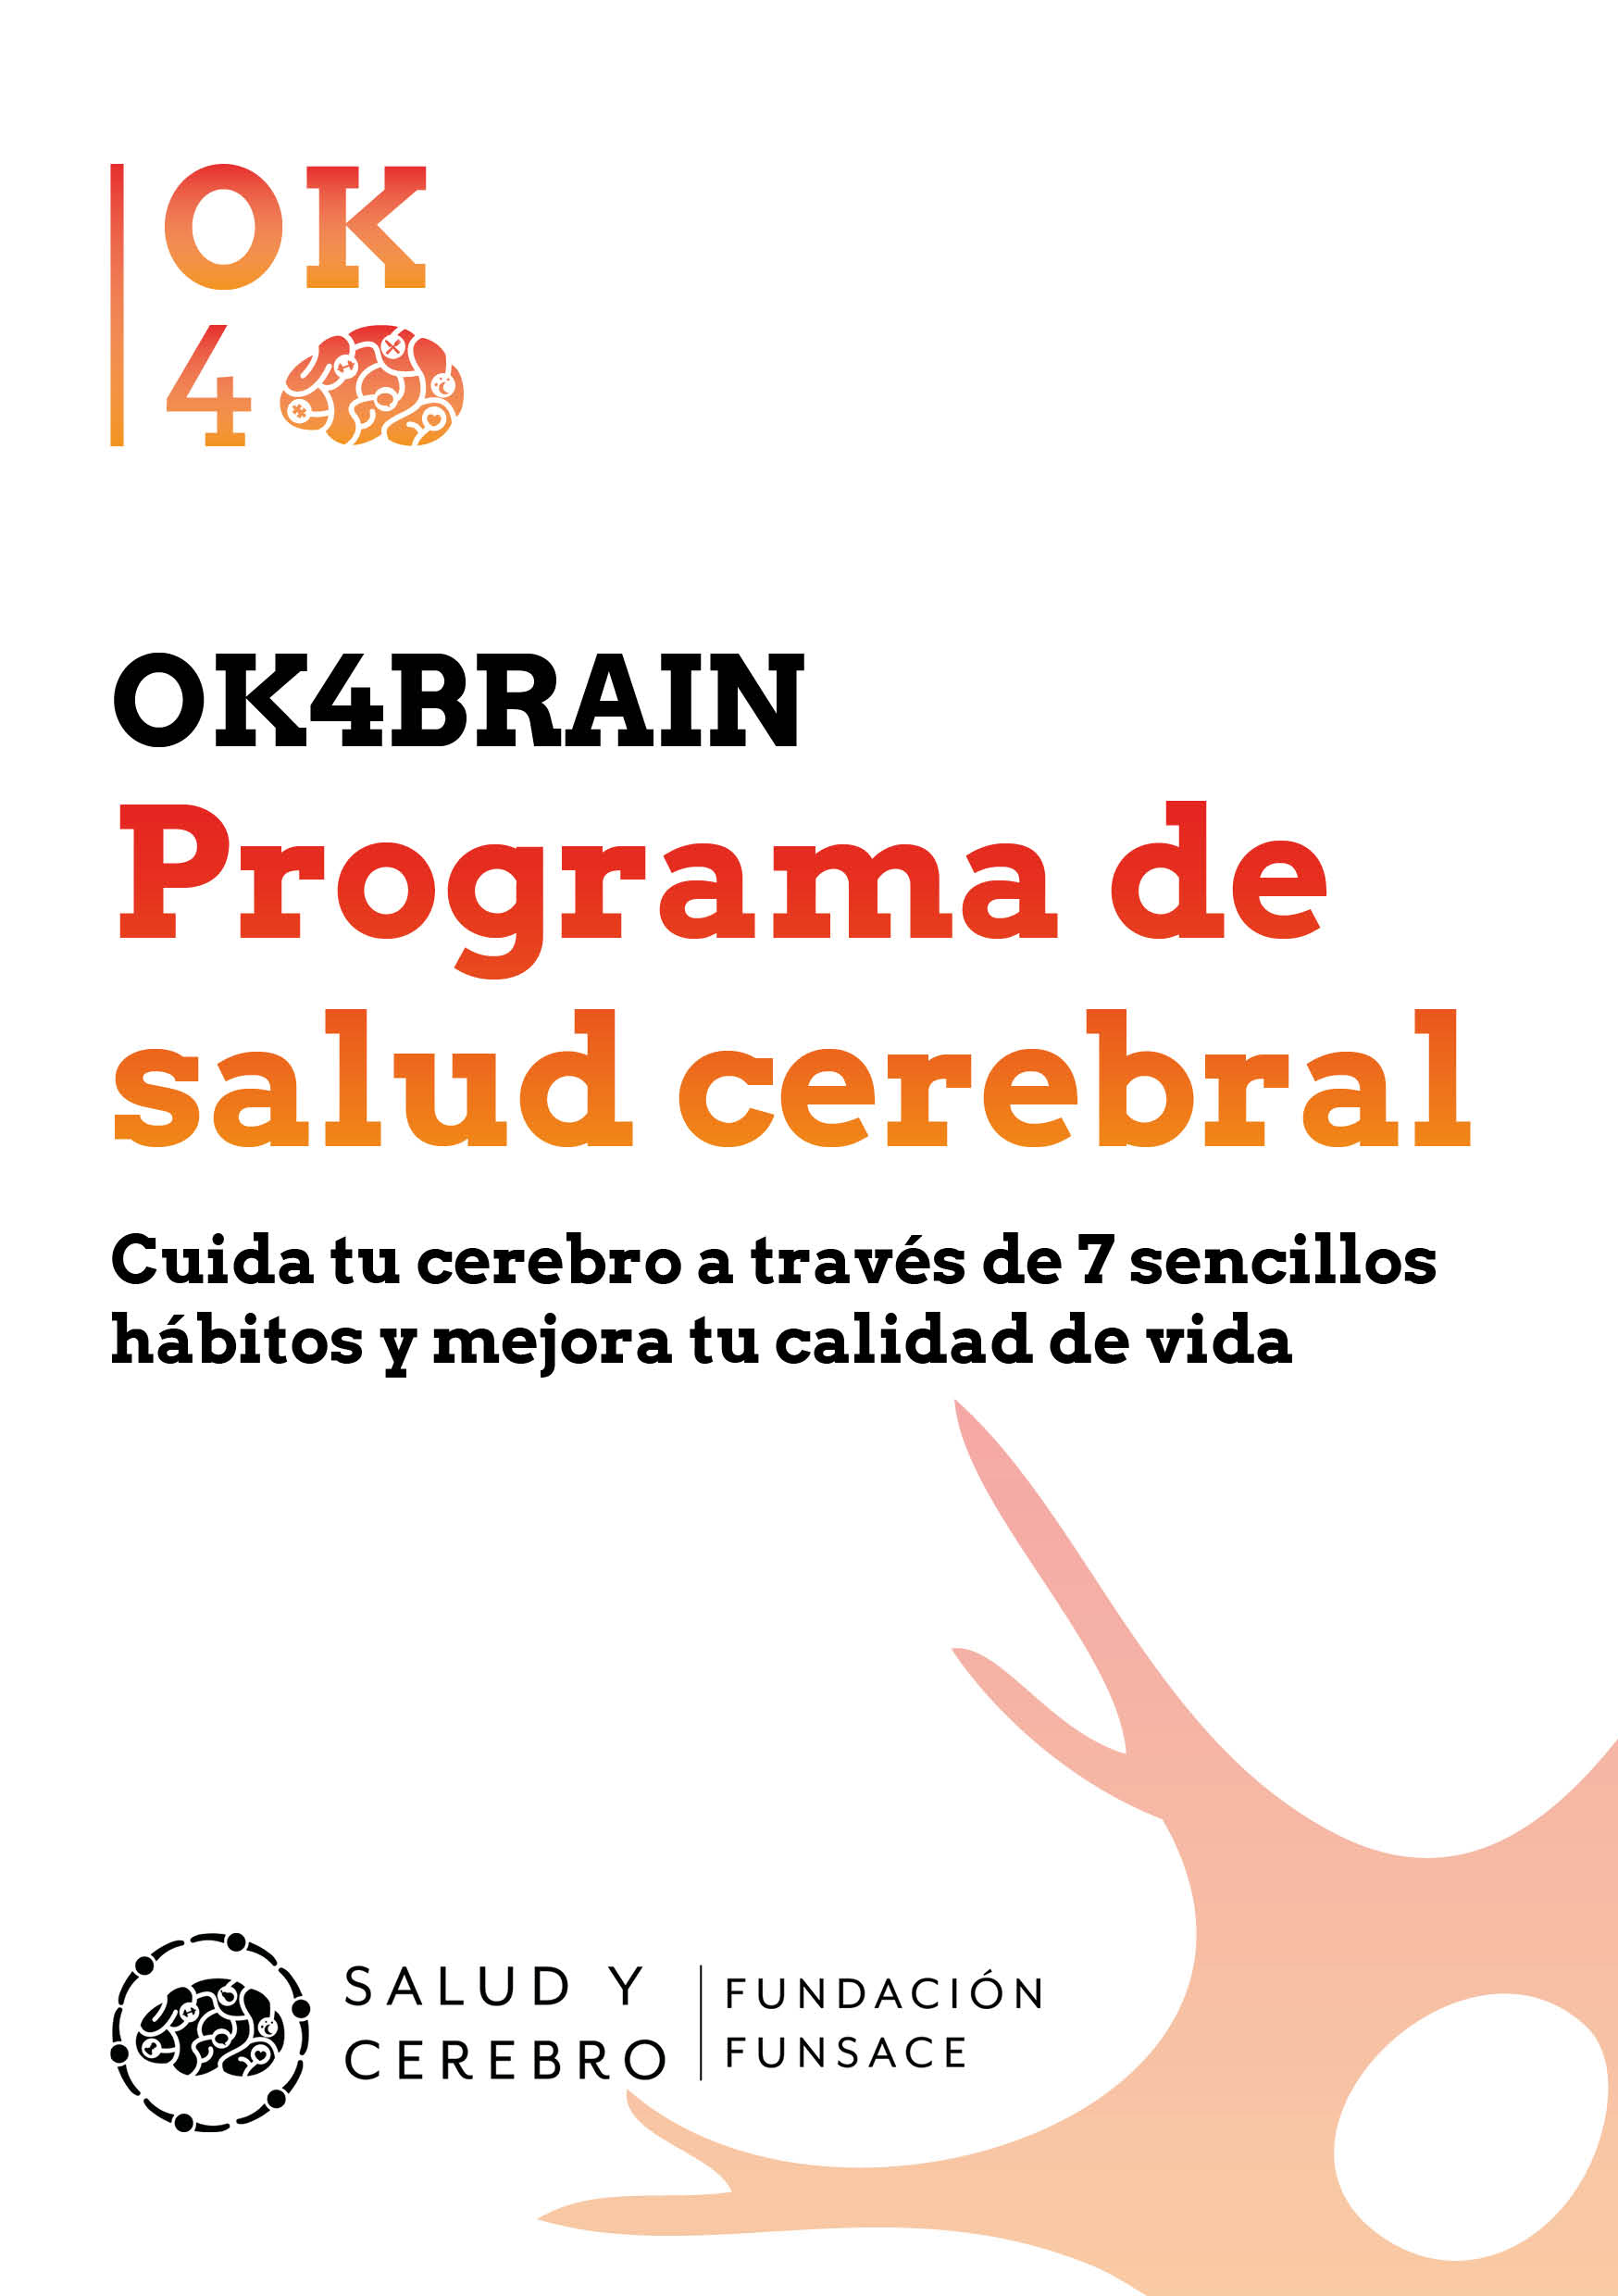 Programa de salud cerebral OK4Brain FUNSACE